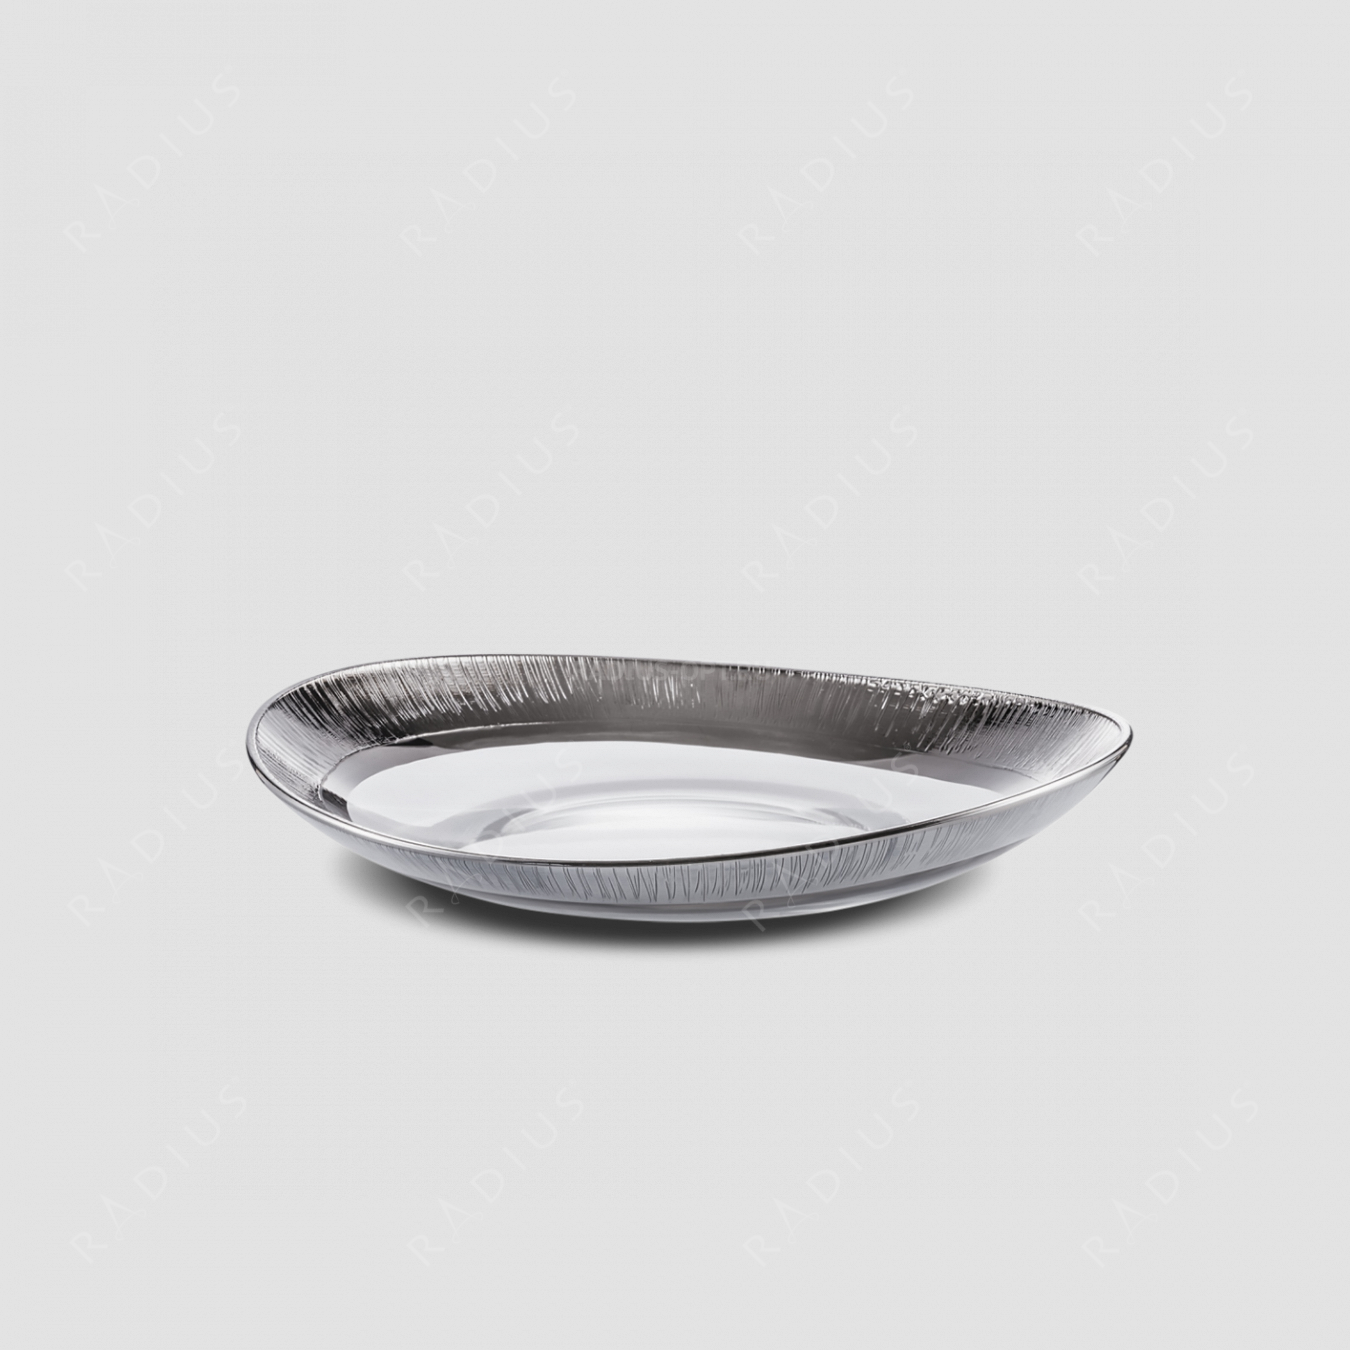 Блюдо глубокое Platin, диаметр: 40 см, материал: бессвинцовый хрусталь, цвет: прозрачный/платина, серия Ravi, EISCH, Германия